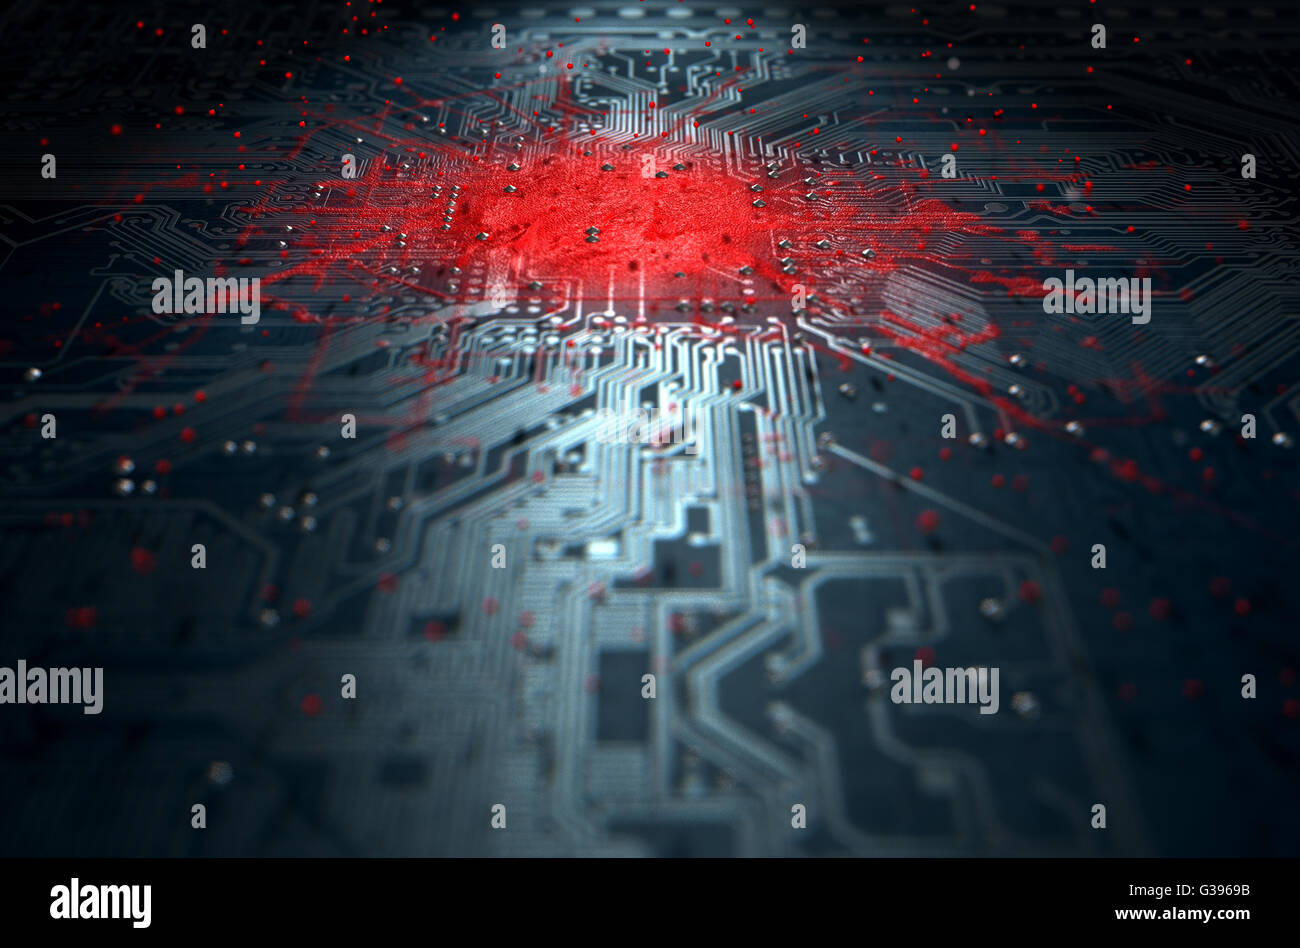 Un rendu 3D d'une vue macro d'une carte à circuits imprimés, d'un virus se répand l'infection apparente rouge du centre Banque D'Images